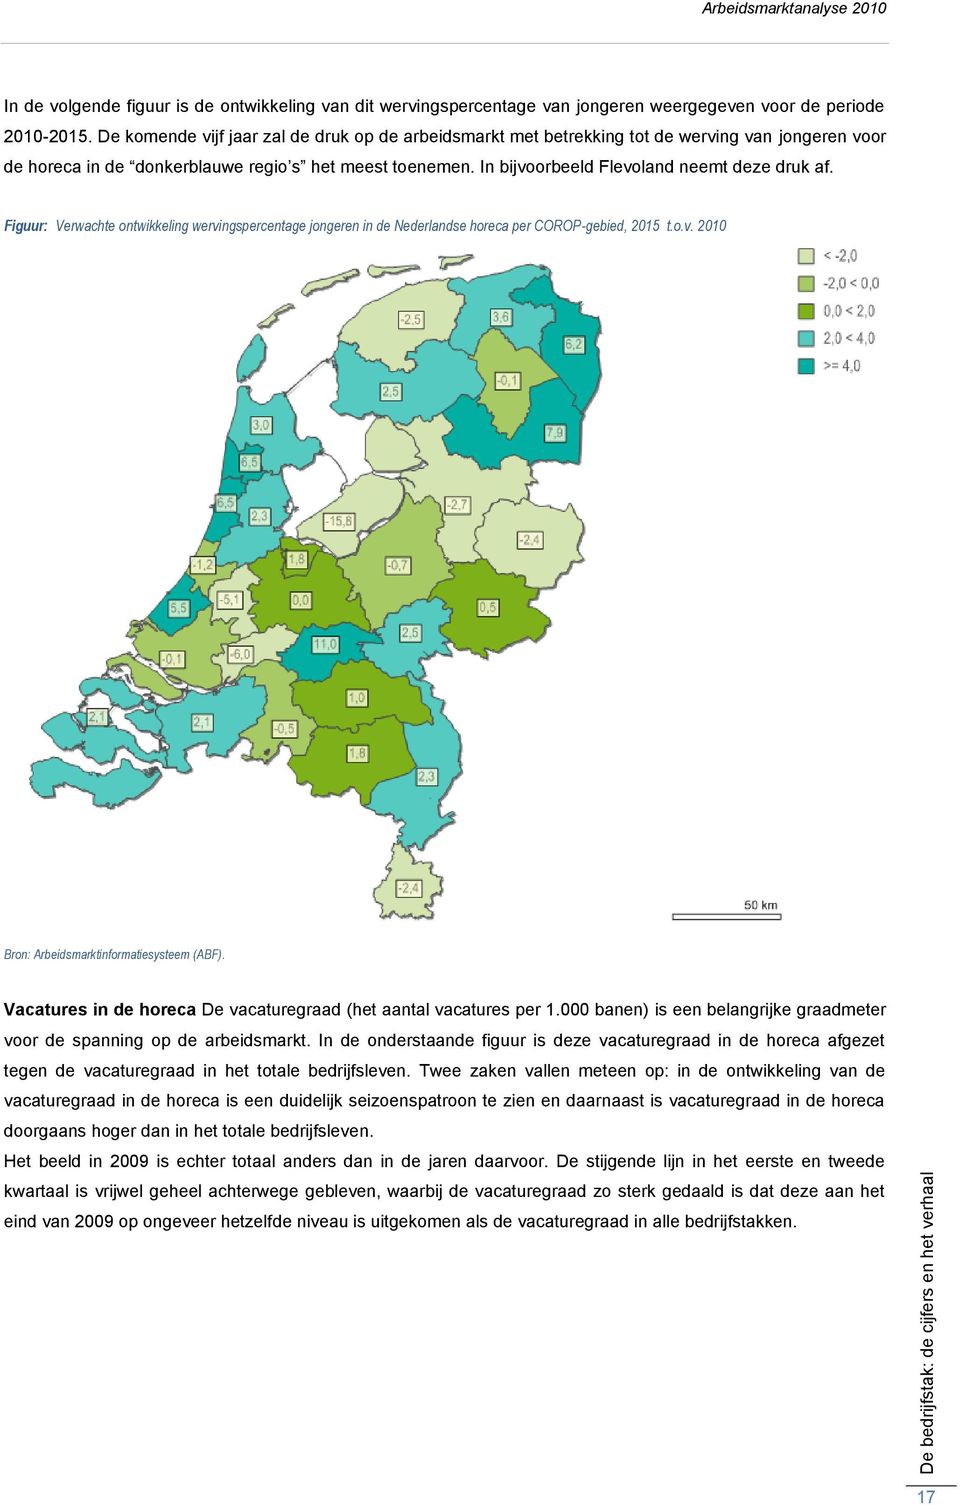 In bijvoorbeeld Flevoland neemt deze druk af. Figuur: Verwachte ontwikkeling wervingspercentage jongeren in de Nederlandse horeca per COROP-gebied, 2015 t.o.v. 2010 Bron: Arbeidsmarktinformatiesysteem (ABF).